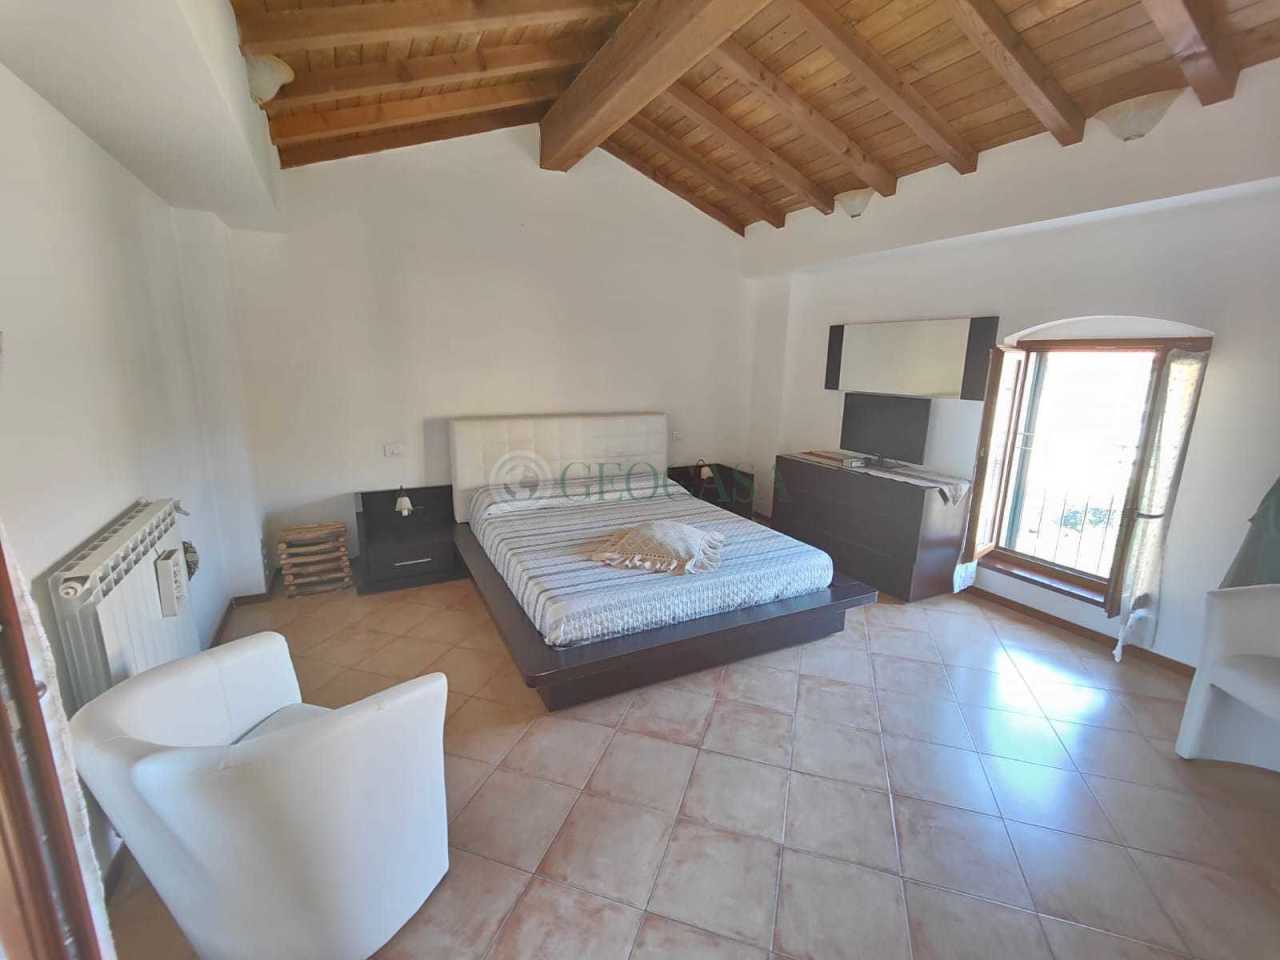 Villa a Schiera in vendita a Sarzana, 4 locali, prezzo € 210.000 | PortaleAgenzieImmobiliari.it